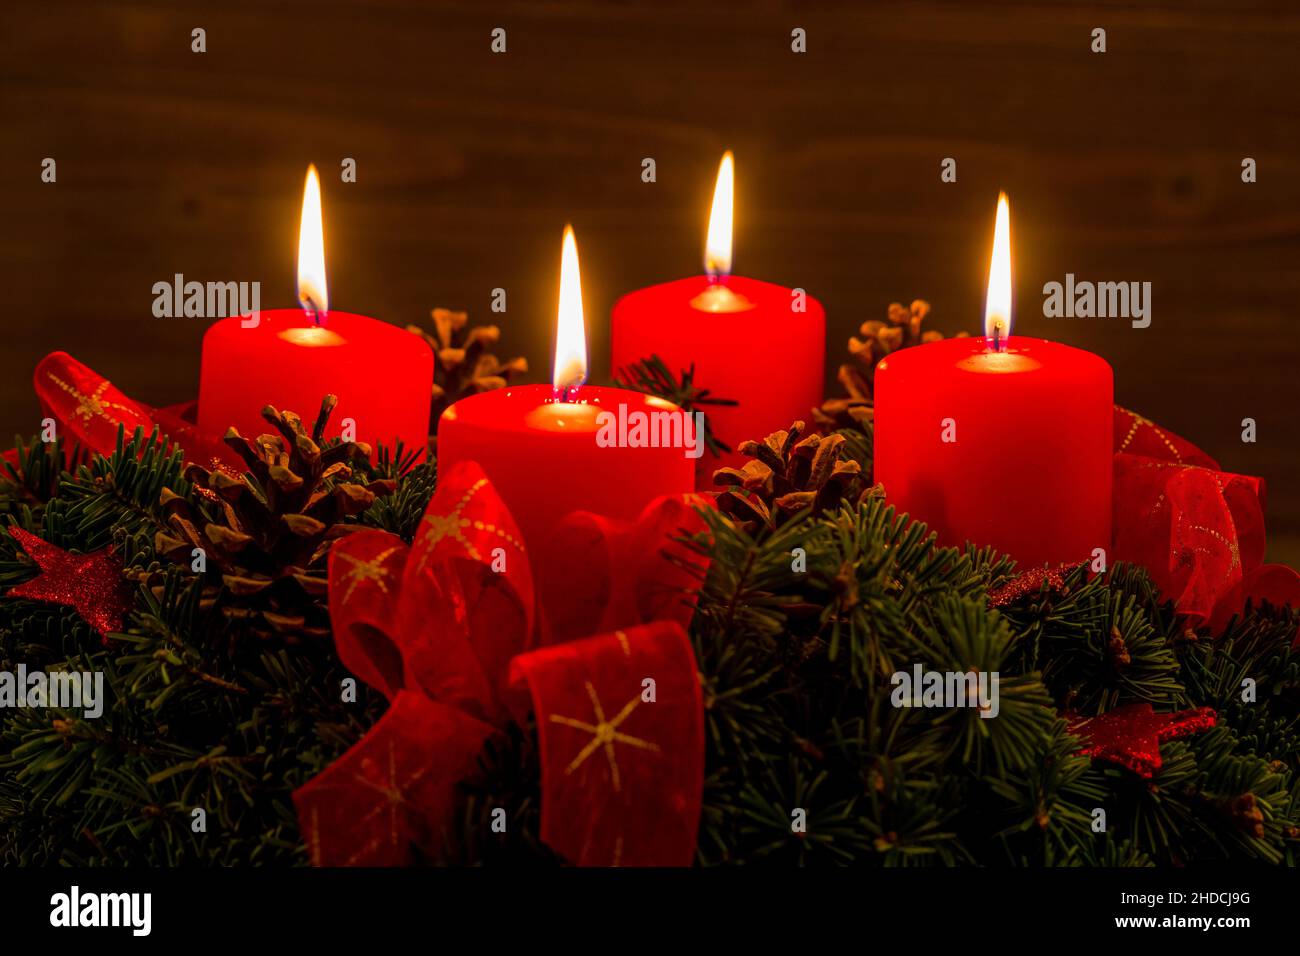 Ein Adventskranz zu Weihnachten sorgt für romatinsche Stimmung in der stillen Advent Zeit. 4 brennende Kerzen, 4. Advent, Stock Photo